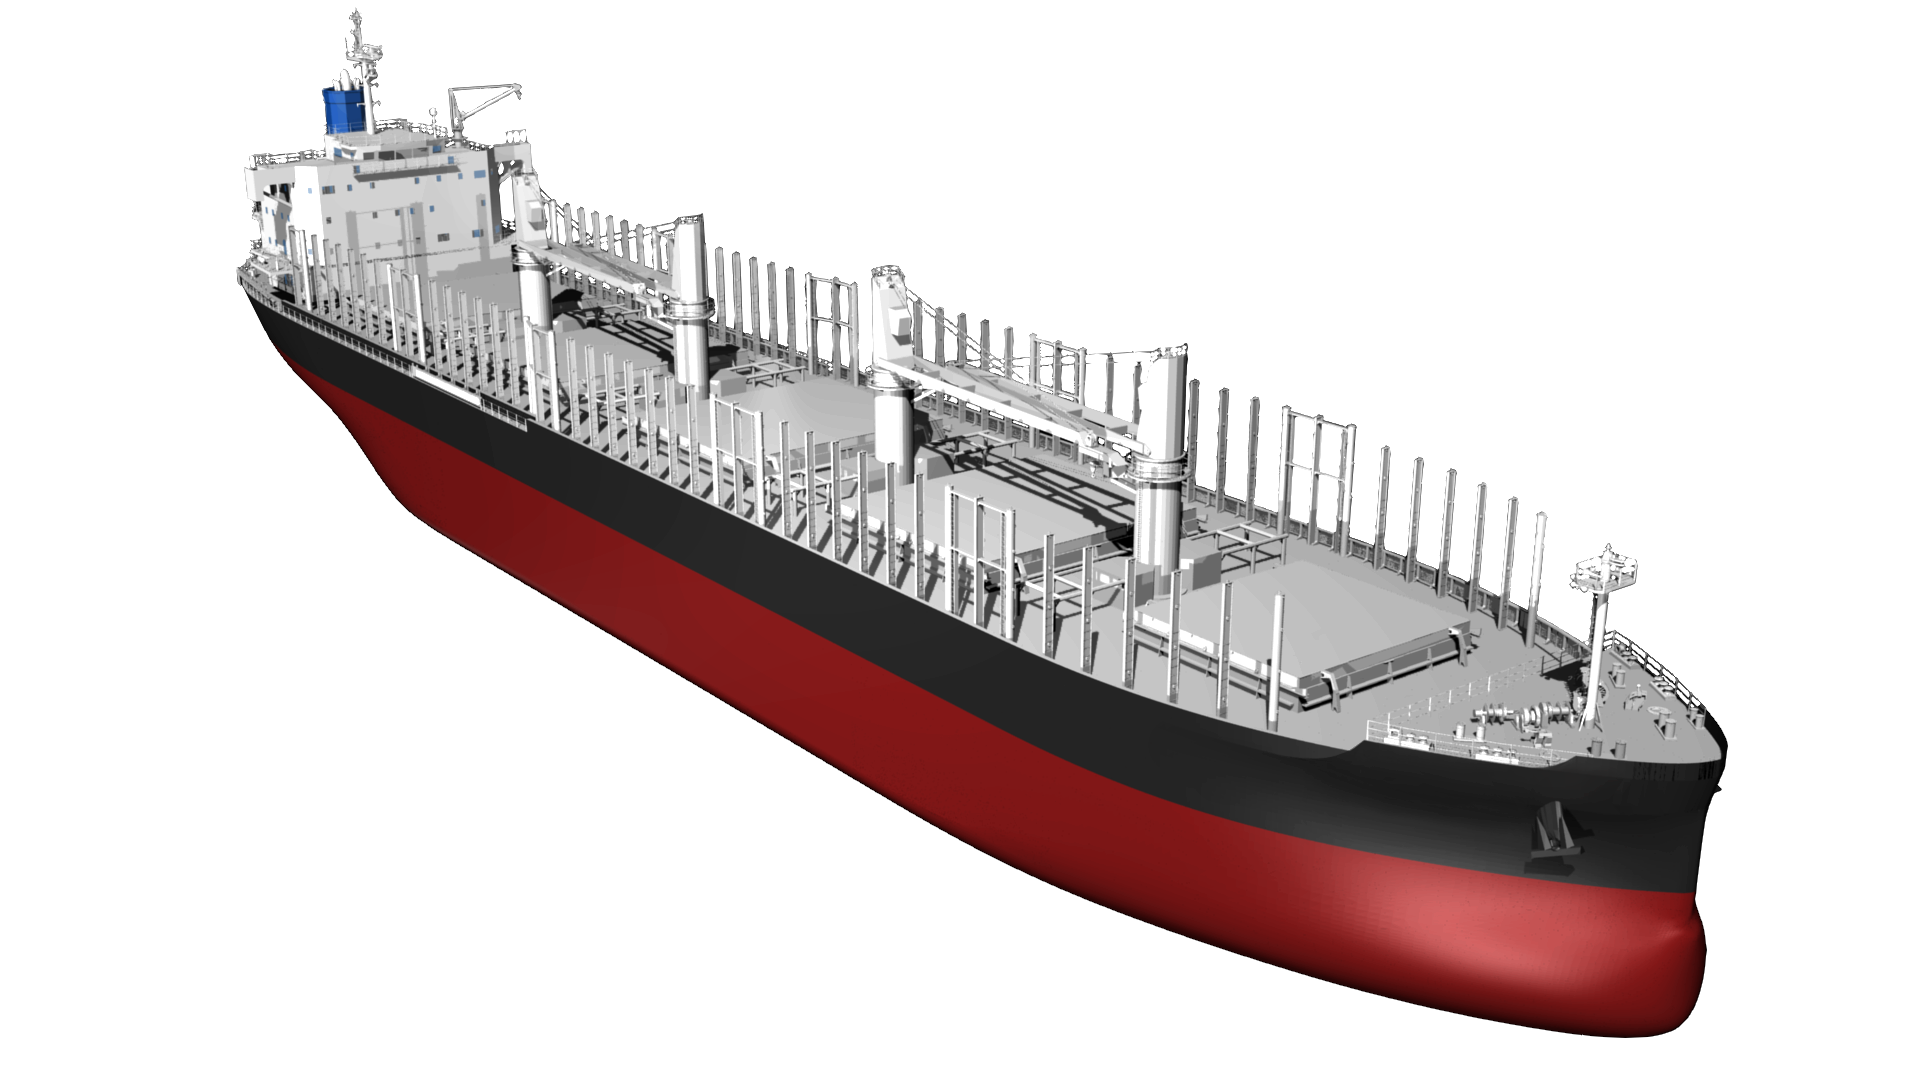 Download PNG image - Cargo Vessel PNG Transparent Image 